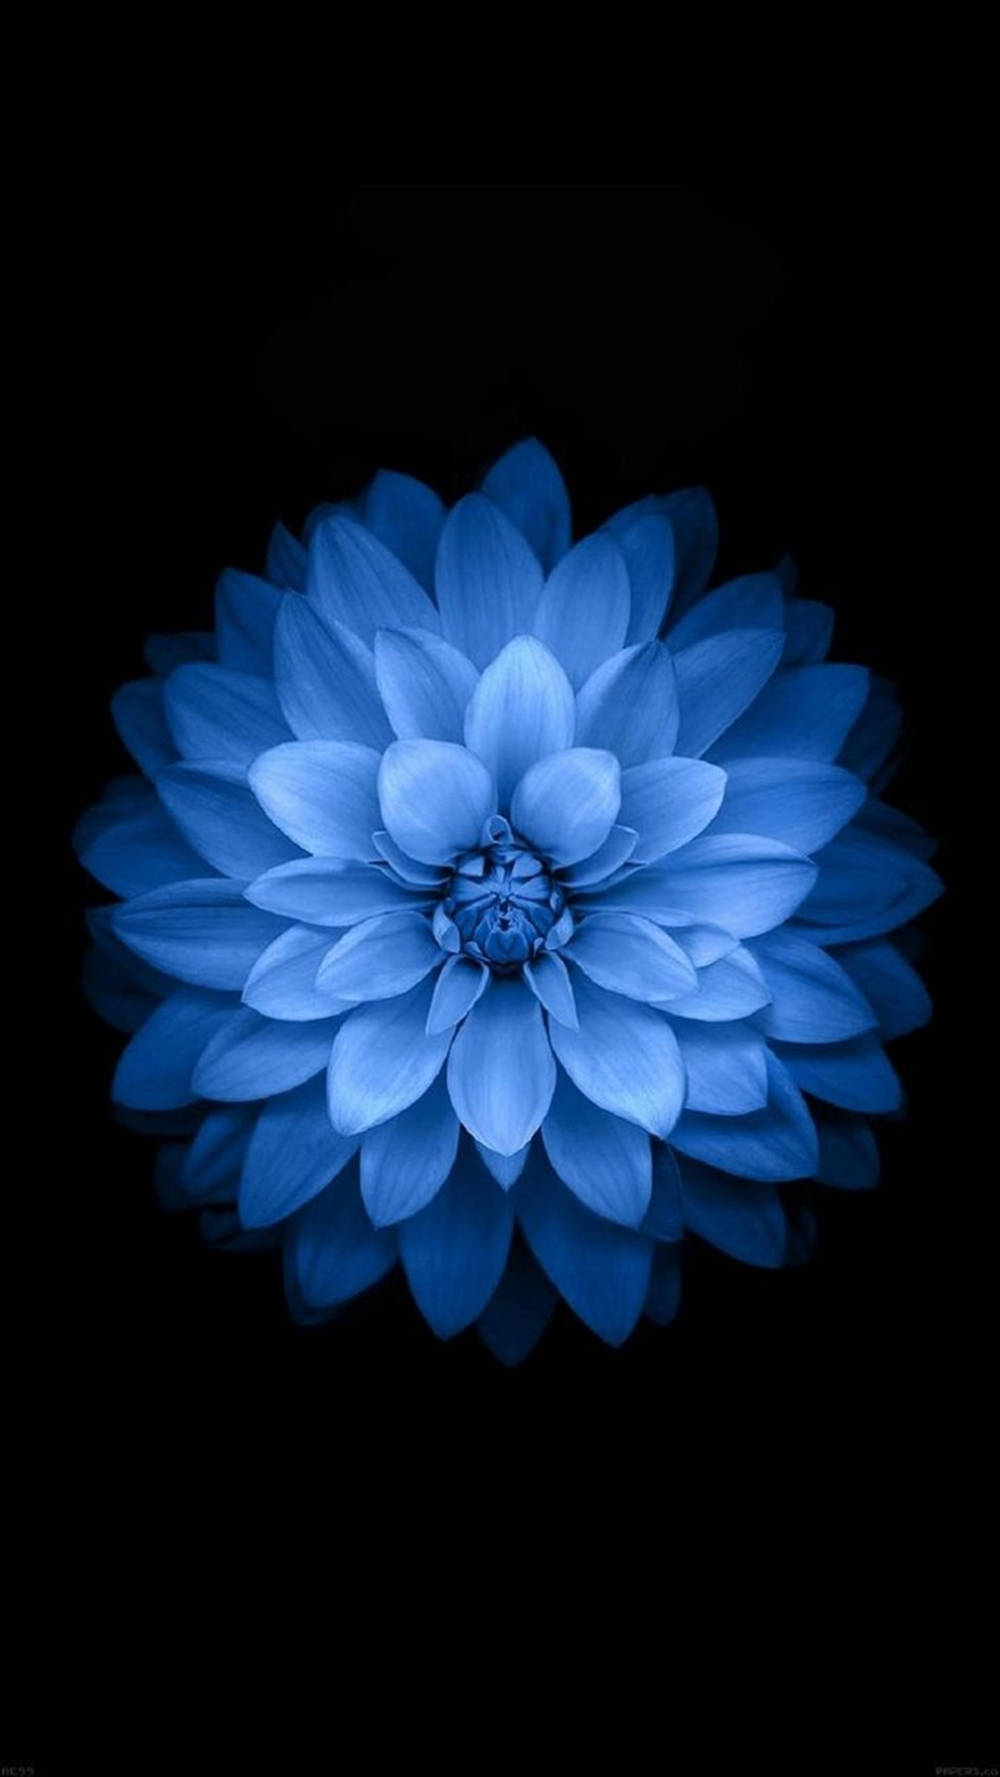 Trending Light Blue Dahlia Flower Wallpaper